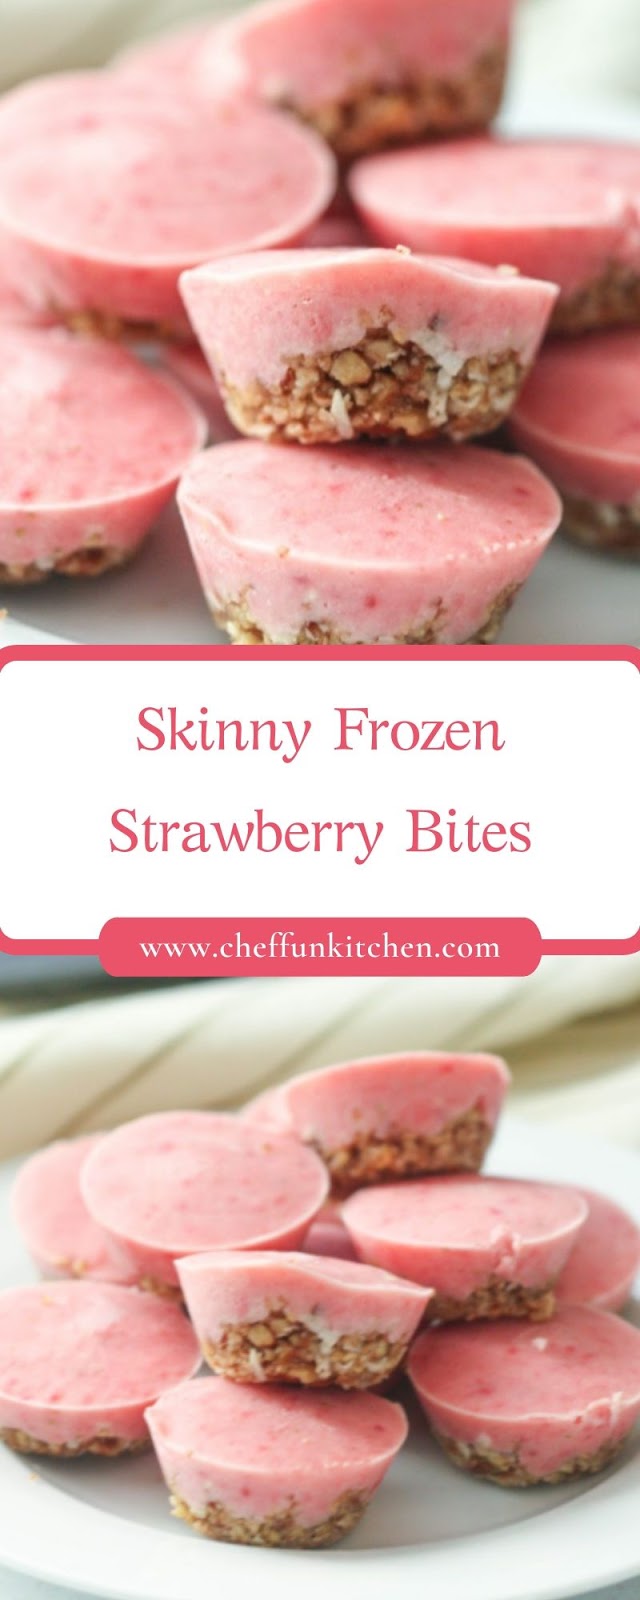 Skinny Frozen Strawberry Bites